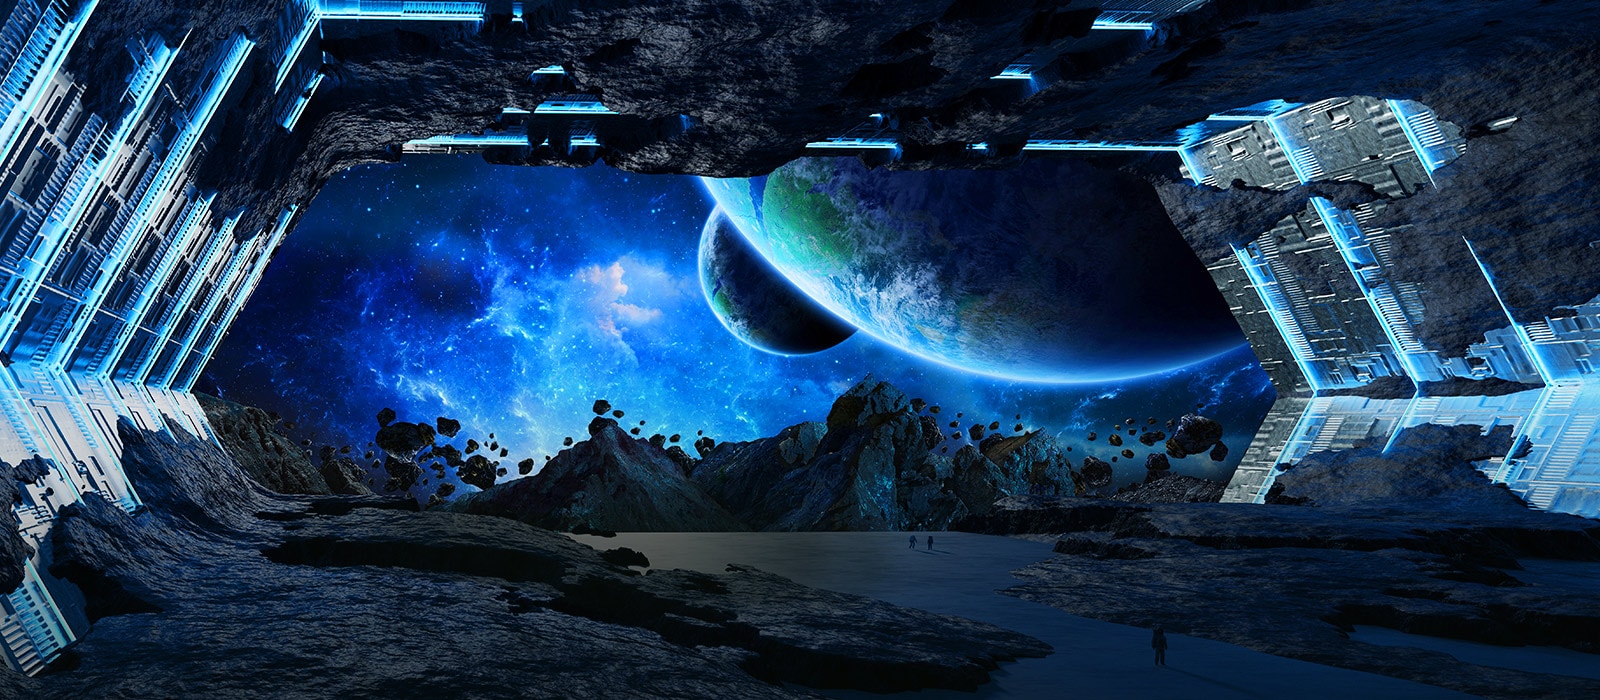 مشهد لحيز صخري مع كوكب كبير يظهر بالزاوية اليمنى العلوية للشاشة.